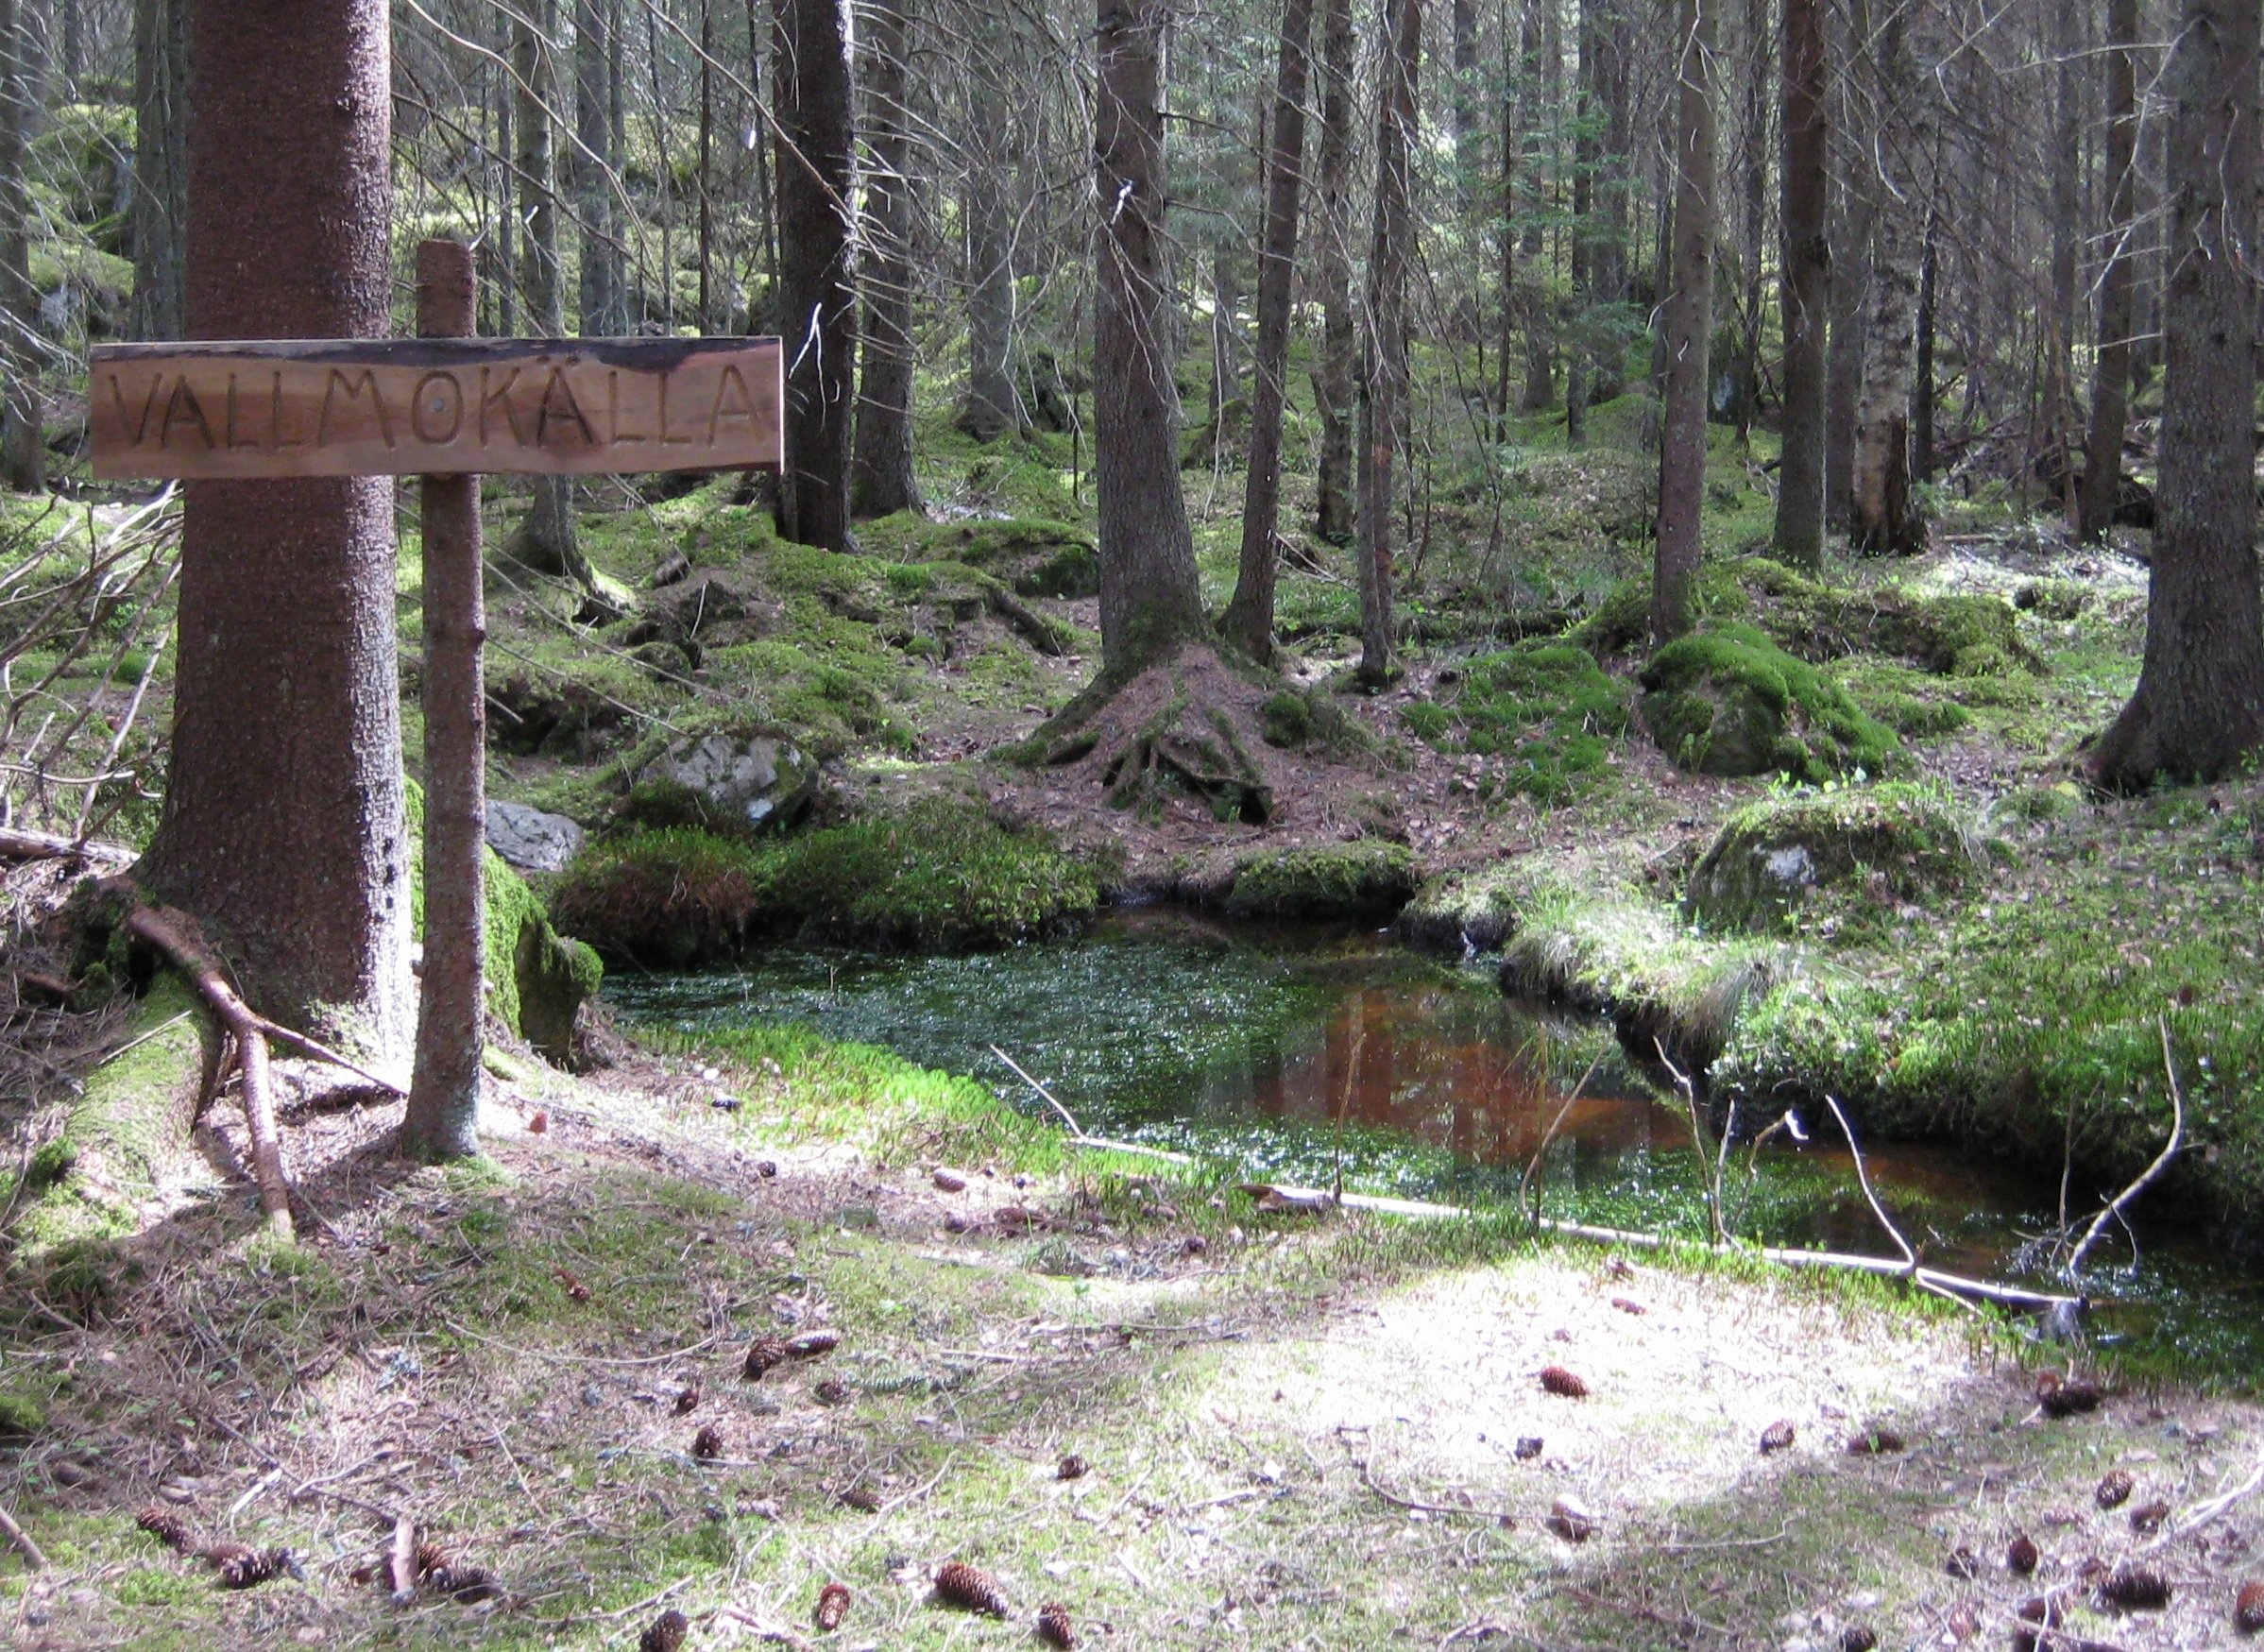 I en tät skog finns en liten vattenkälla. Vid källan står en skylt med texten "Vallmokälla" på.